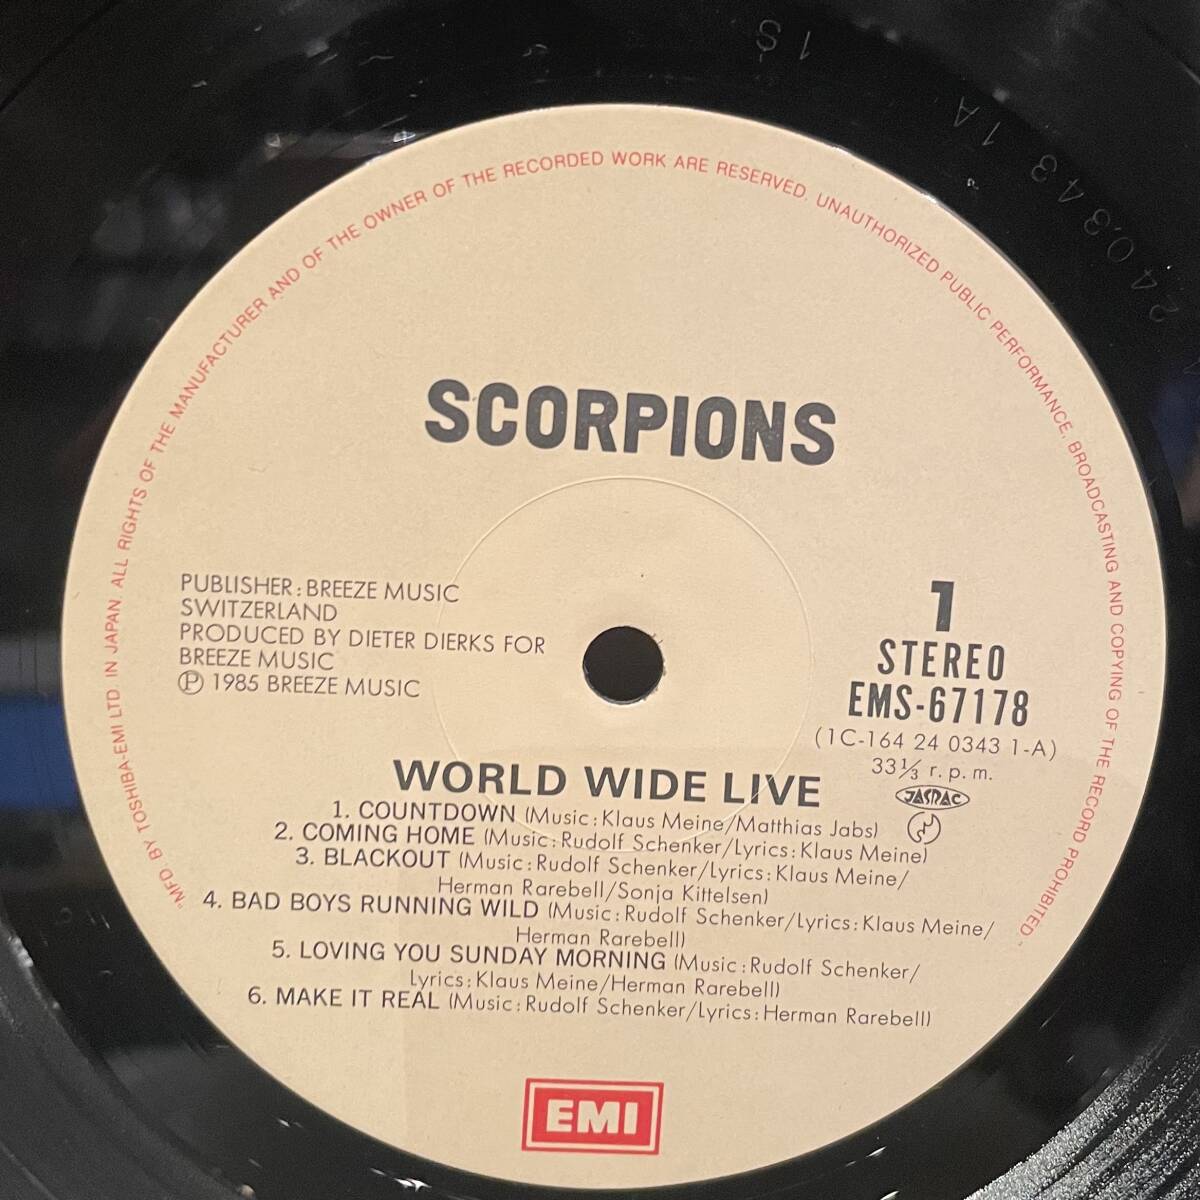 ◇国内盤/帯付!2枚組LP◇スコーピオンズ Scorpions/ワールドワイドライブ World Wide Live EMS-67178-79 HR/HM ライブ盤_画像2